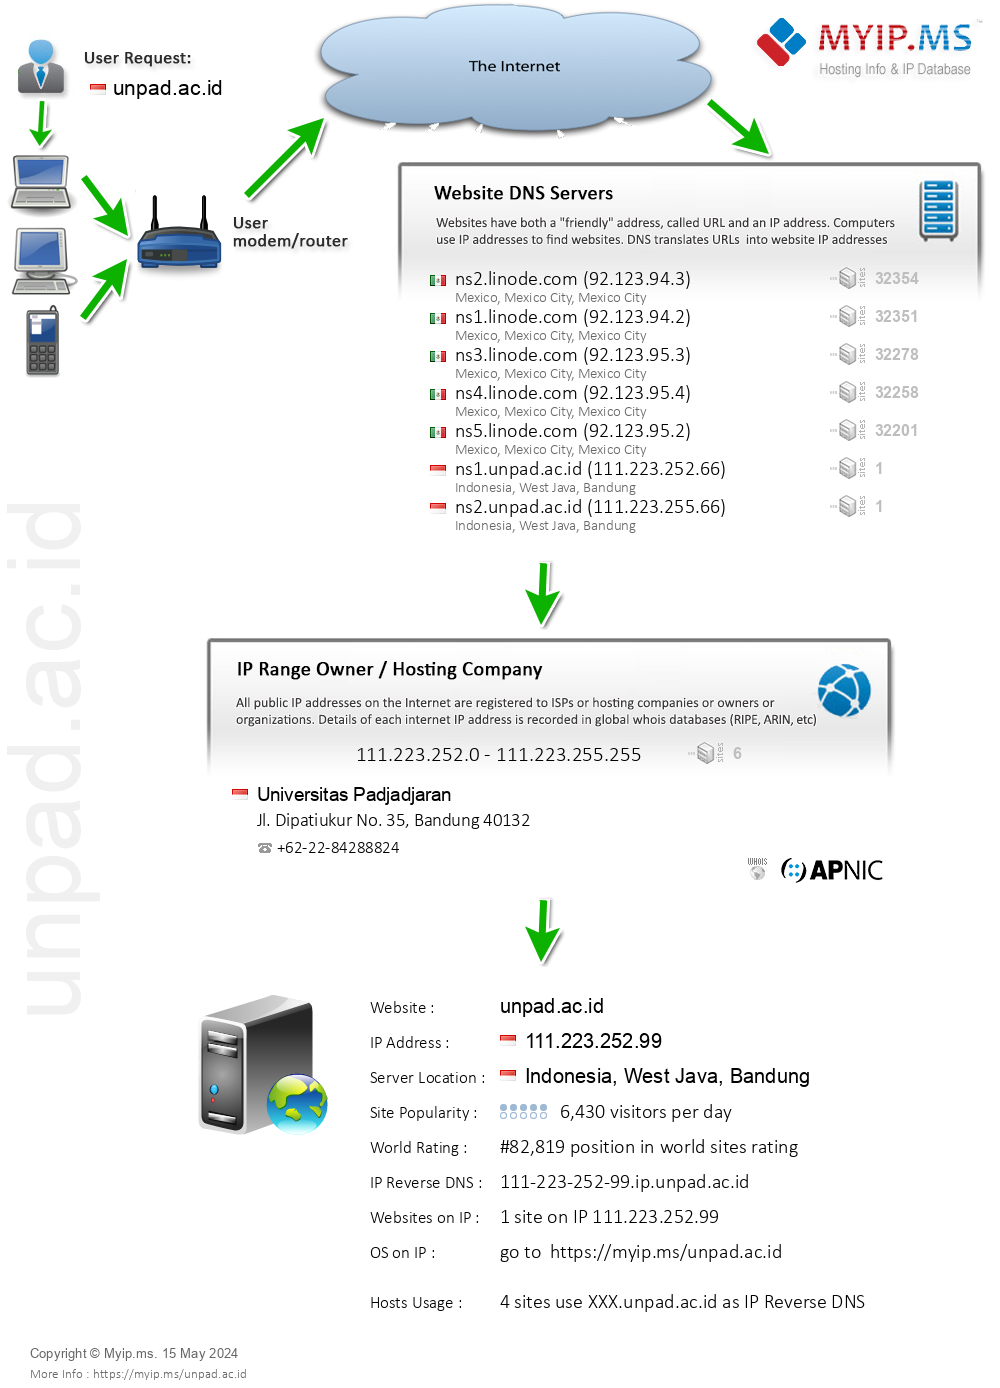 Unpad.ac.id - Website Hosting Visual IP Diagram